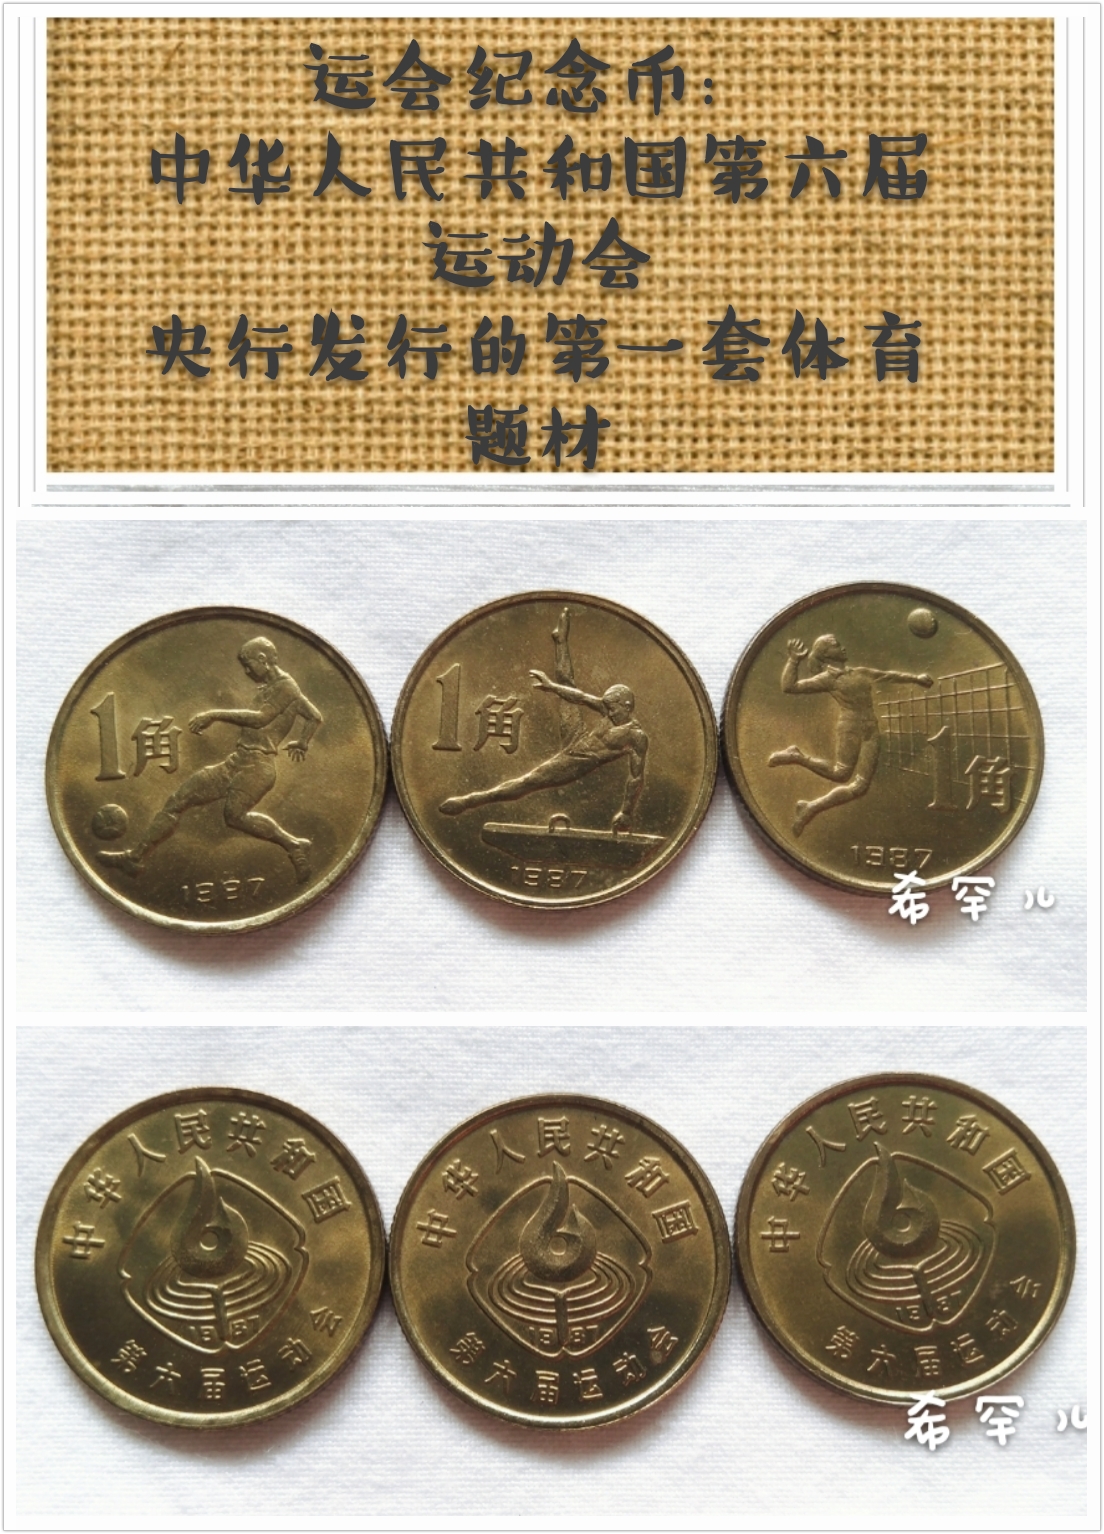 六运会纪念币样币图片